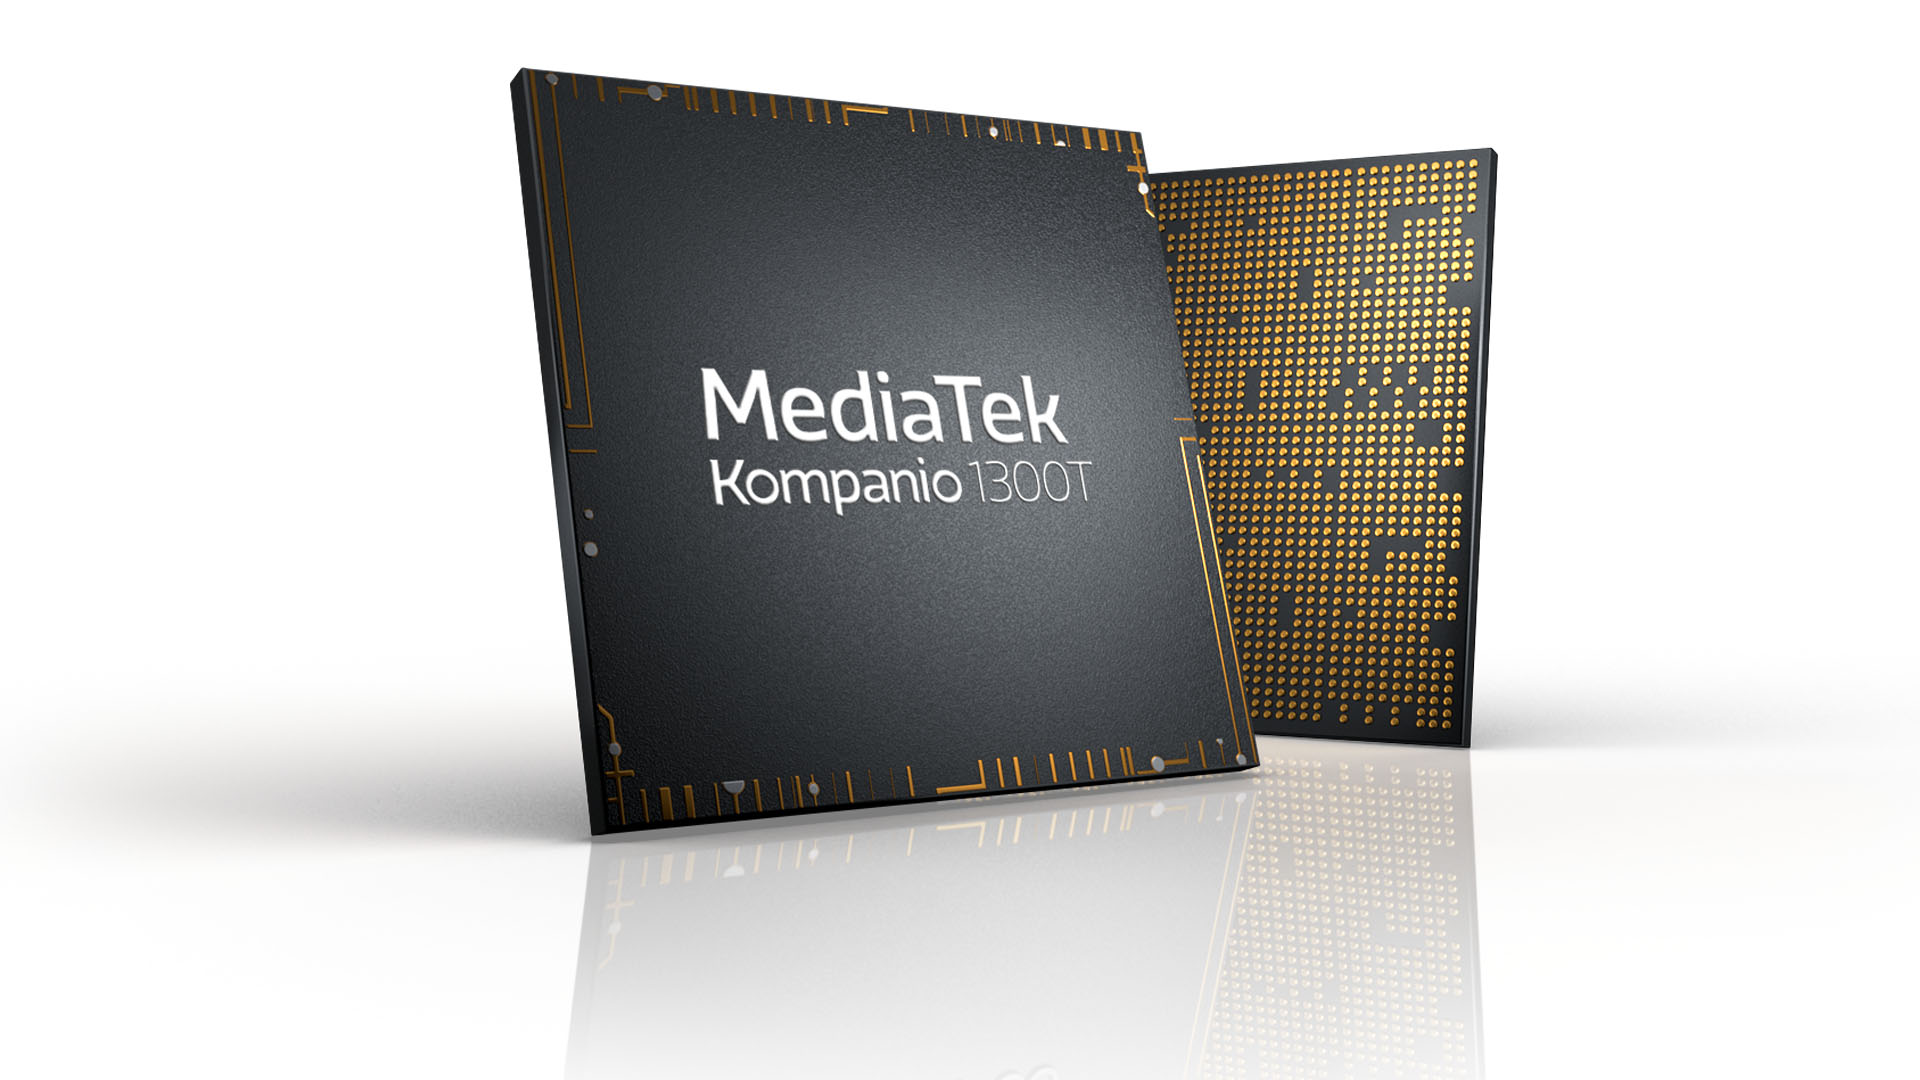 MediaTek เปิดตัวแพลตฟอร์ม Kompanio 1300T เพื่อยกระดับประสิทธิภาพแท็บเล็ตให้ทรงพลัง